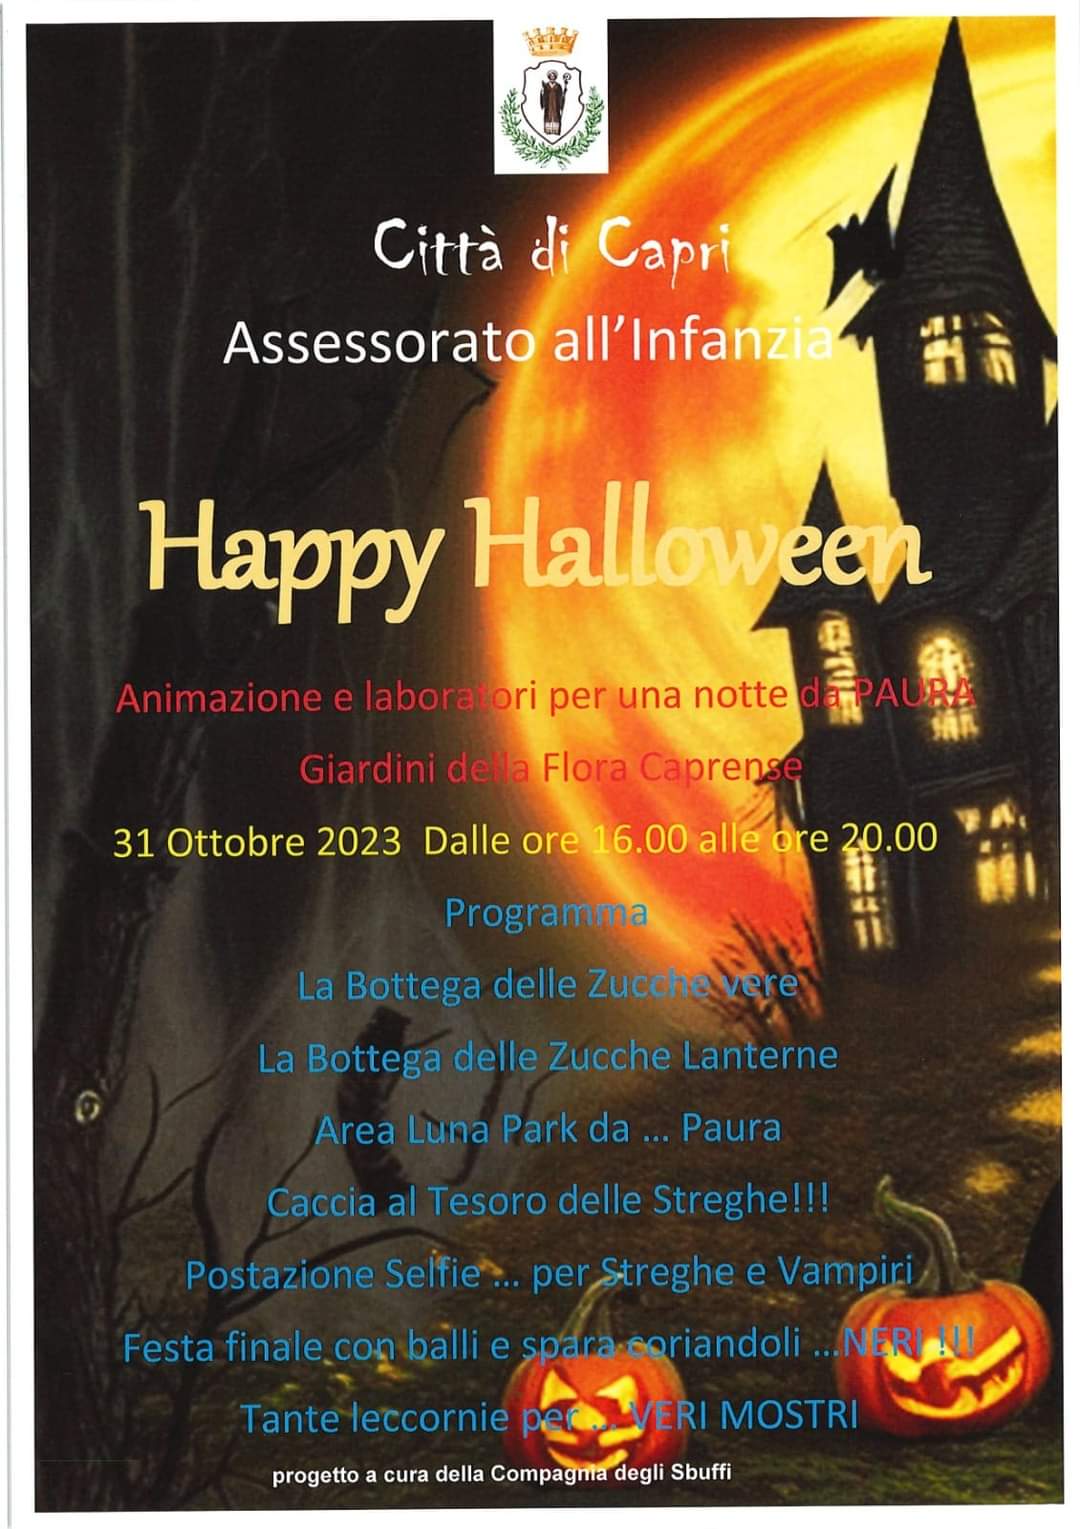 “Happy Halloween” il 31 ottobre a Capri: il programma